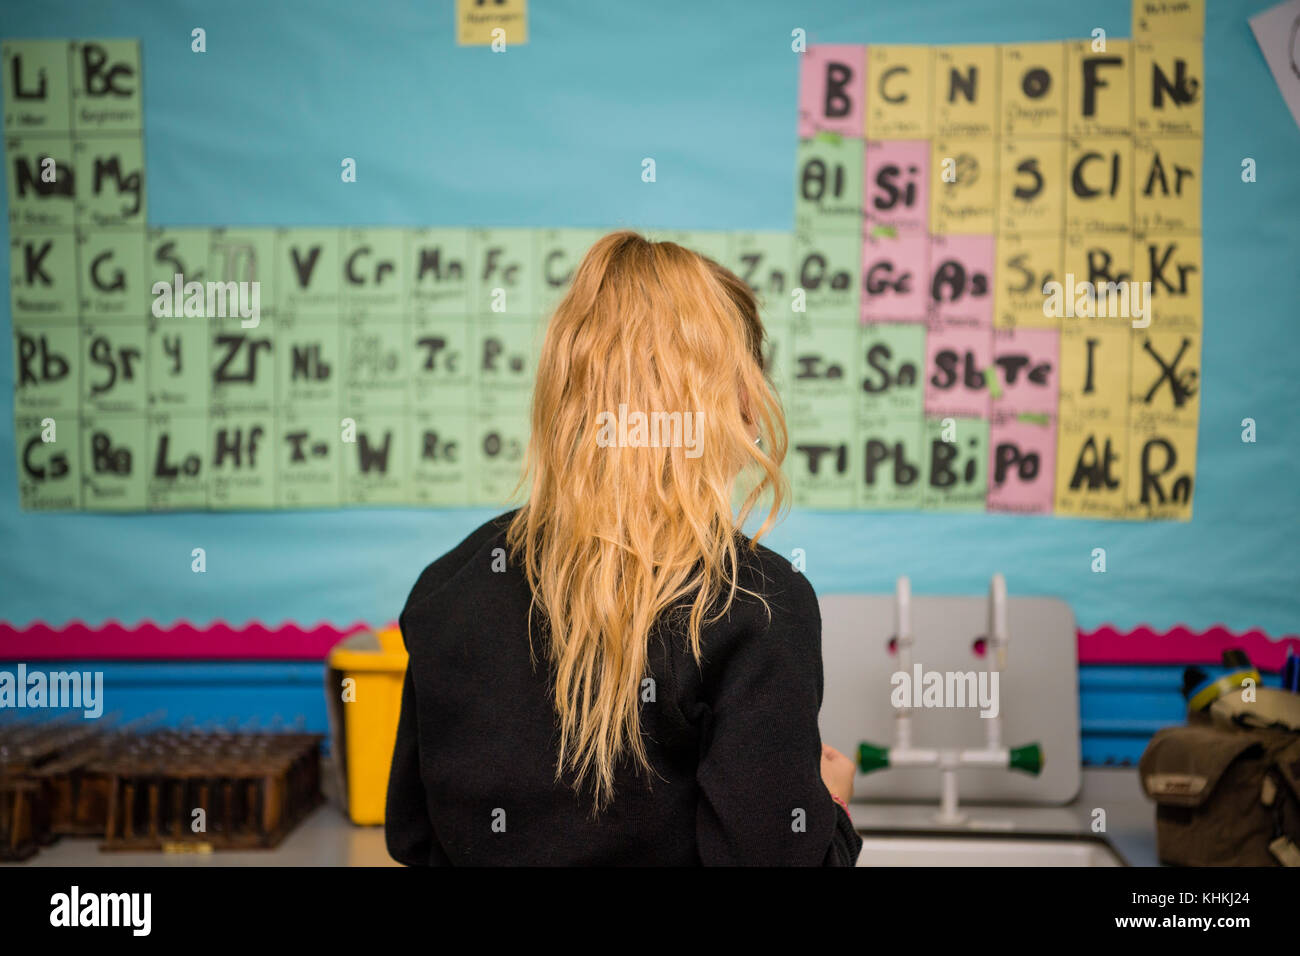 Sekundarstufe in Großbritannien: Rückansicht eines Ein teenager-giirl weiblichen Schüler Student vor dem Element Periodensystem an der Wand in einem Chemie Wissenschaft Lektion Klasse Stockfoto